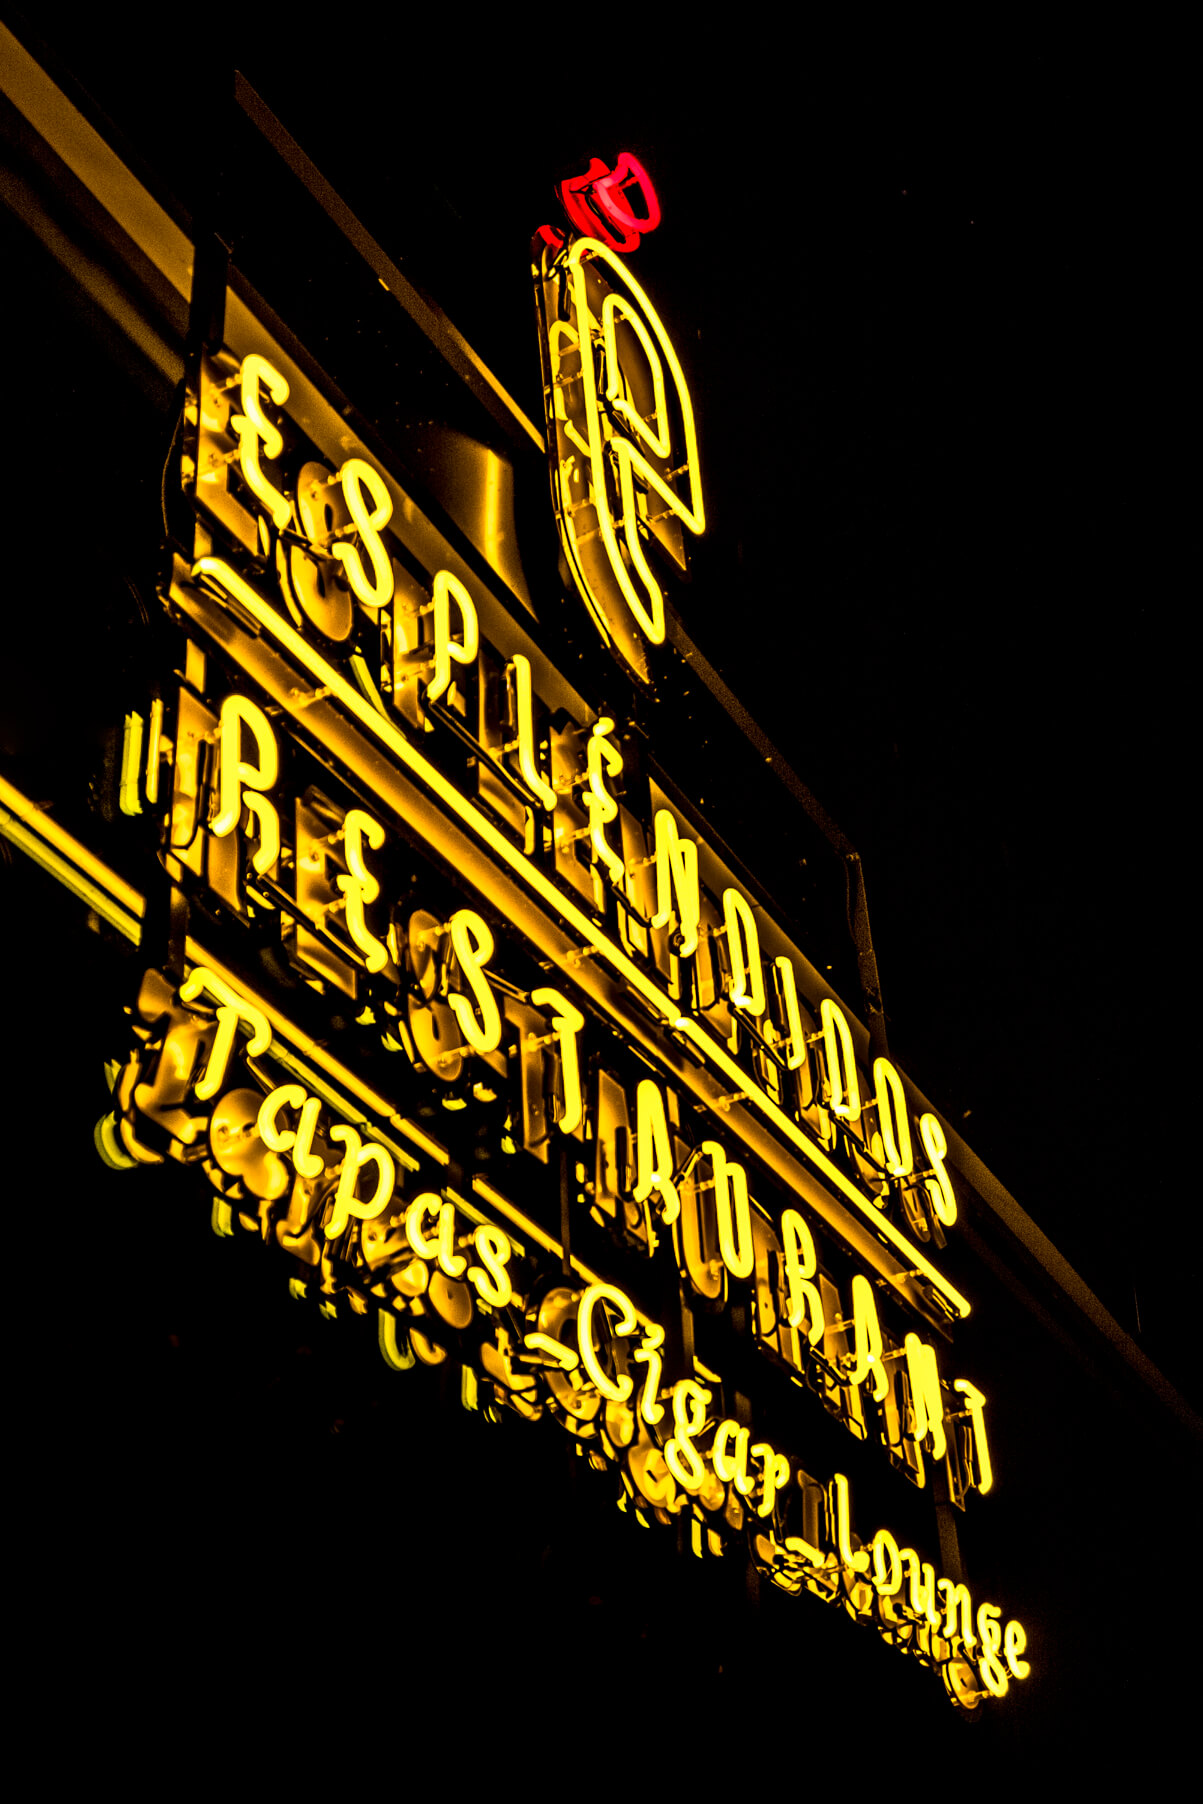 Ristorante Esplendidos Ristorante di tapas - neon-ristorante-esplendidos-tapas-ristorante-neon-colorato-neon-sul-muro-ristorante-finestra-neon-alto-neon-su-acciaio-neon-sublime-neon-segni-neon-lettering-neon-neon-gdynia-redłowo